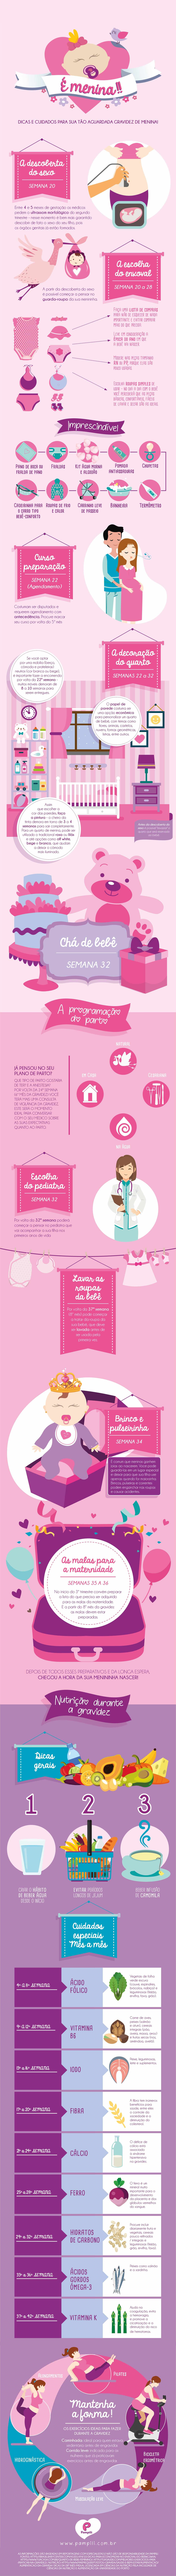 Infográfico Dicas e cuidados para sua tão aguardada gravidez de menina! da Pampili